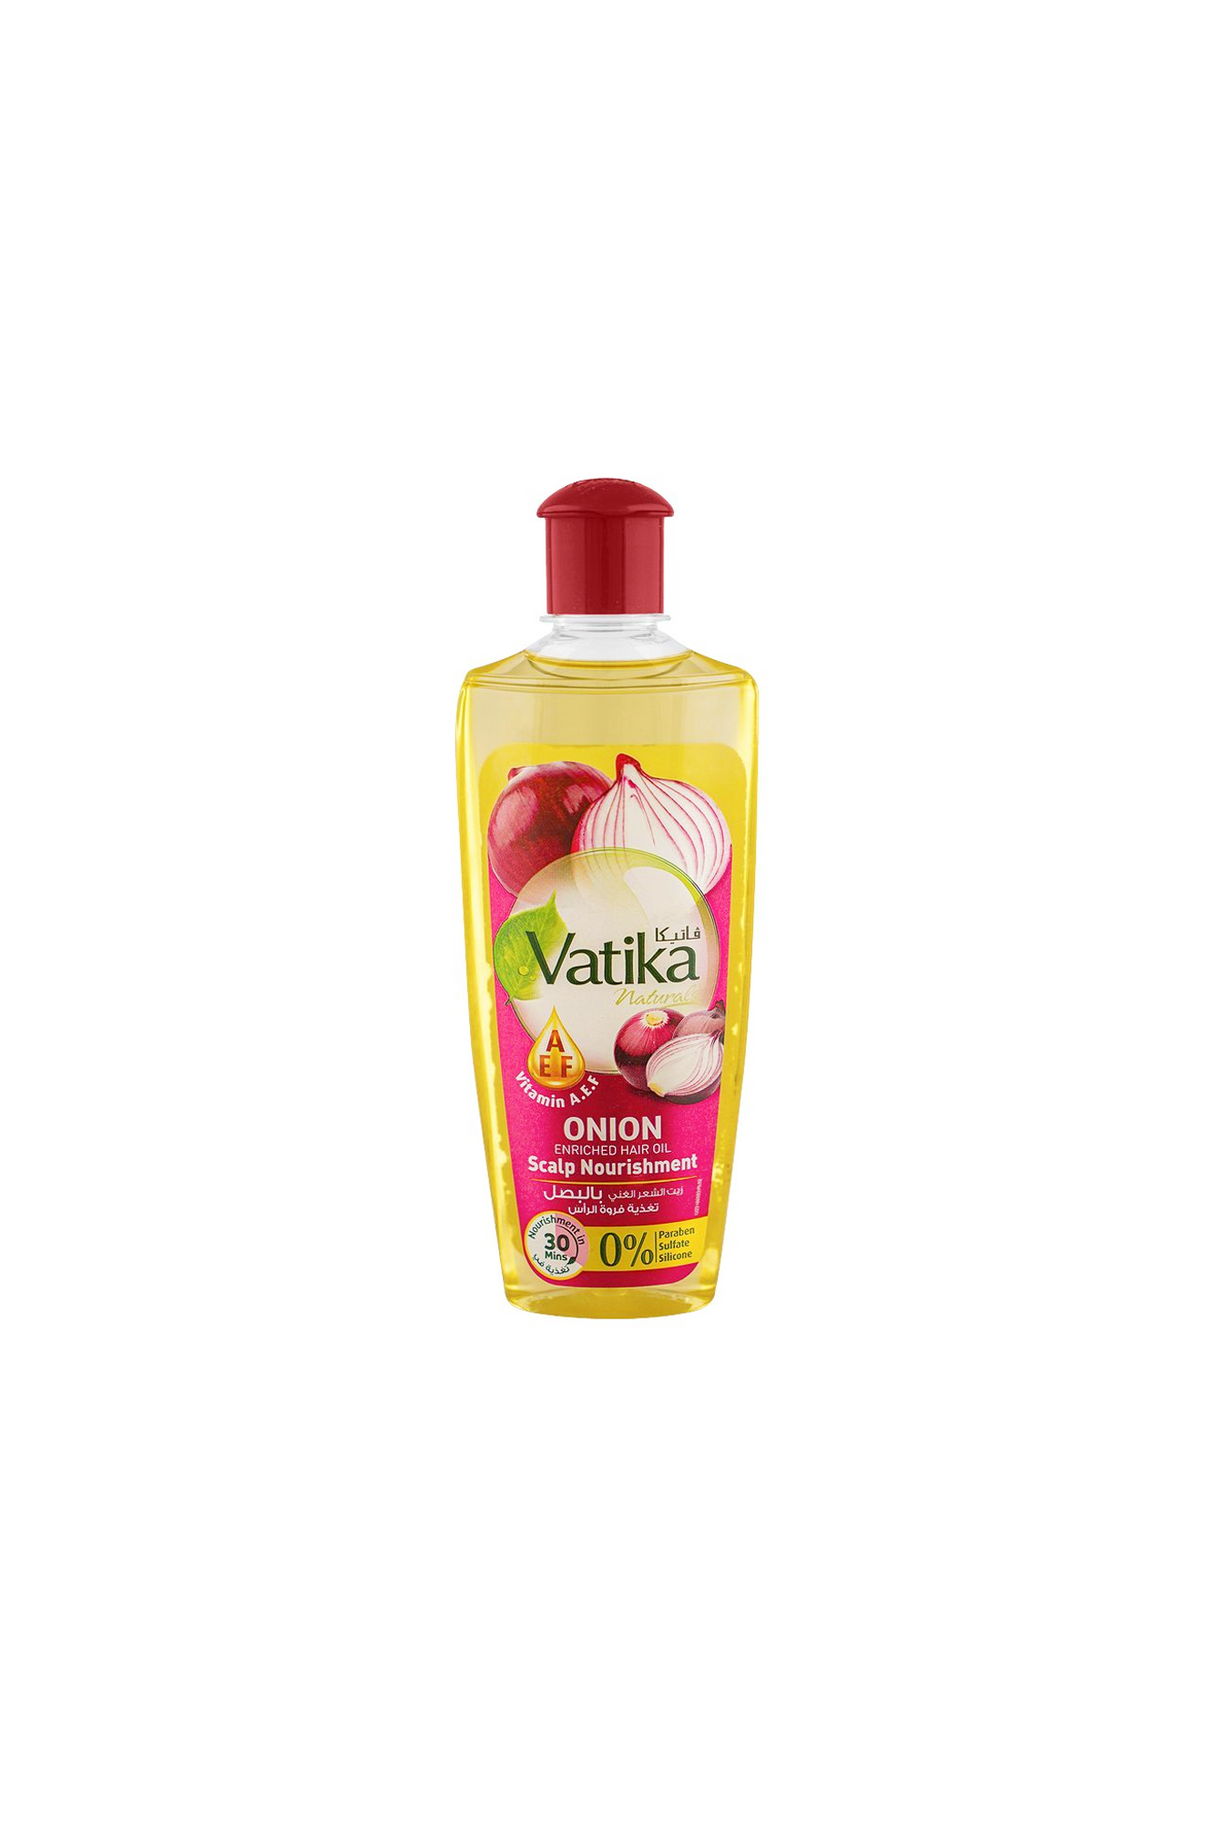 vatika hair oil onion 200ml